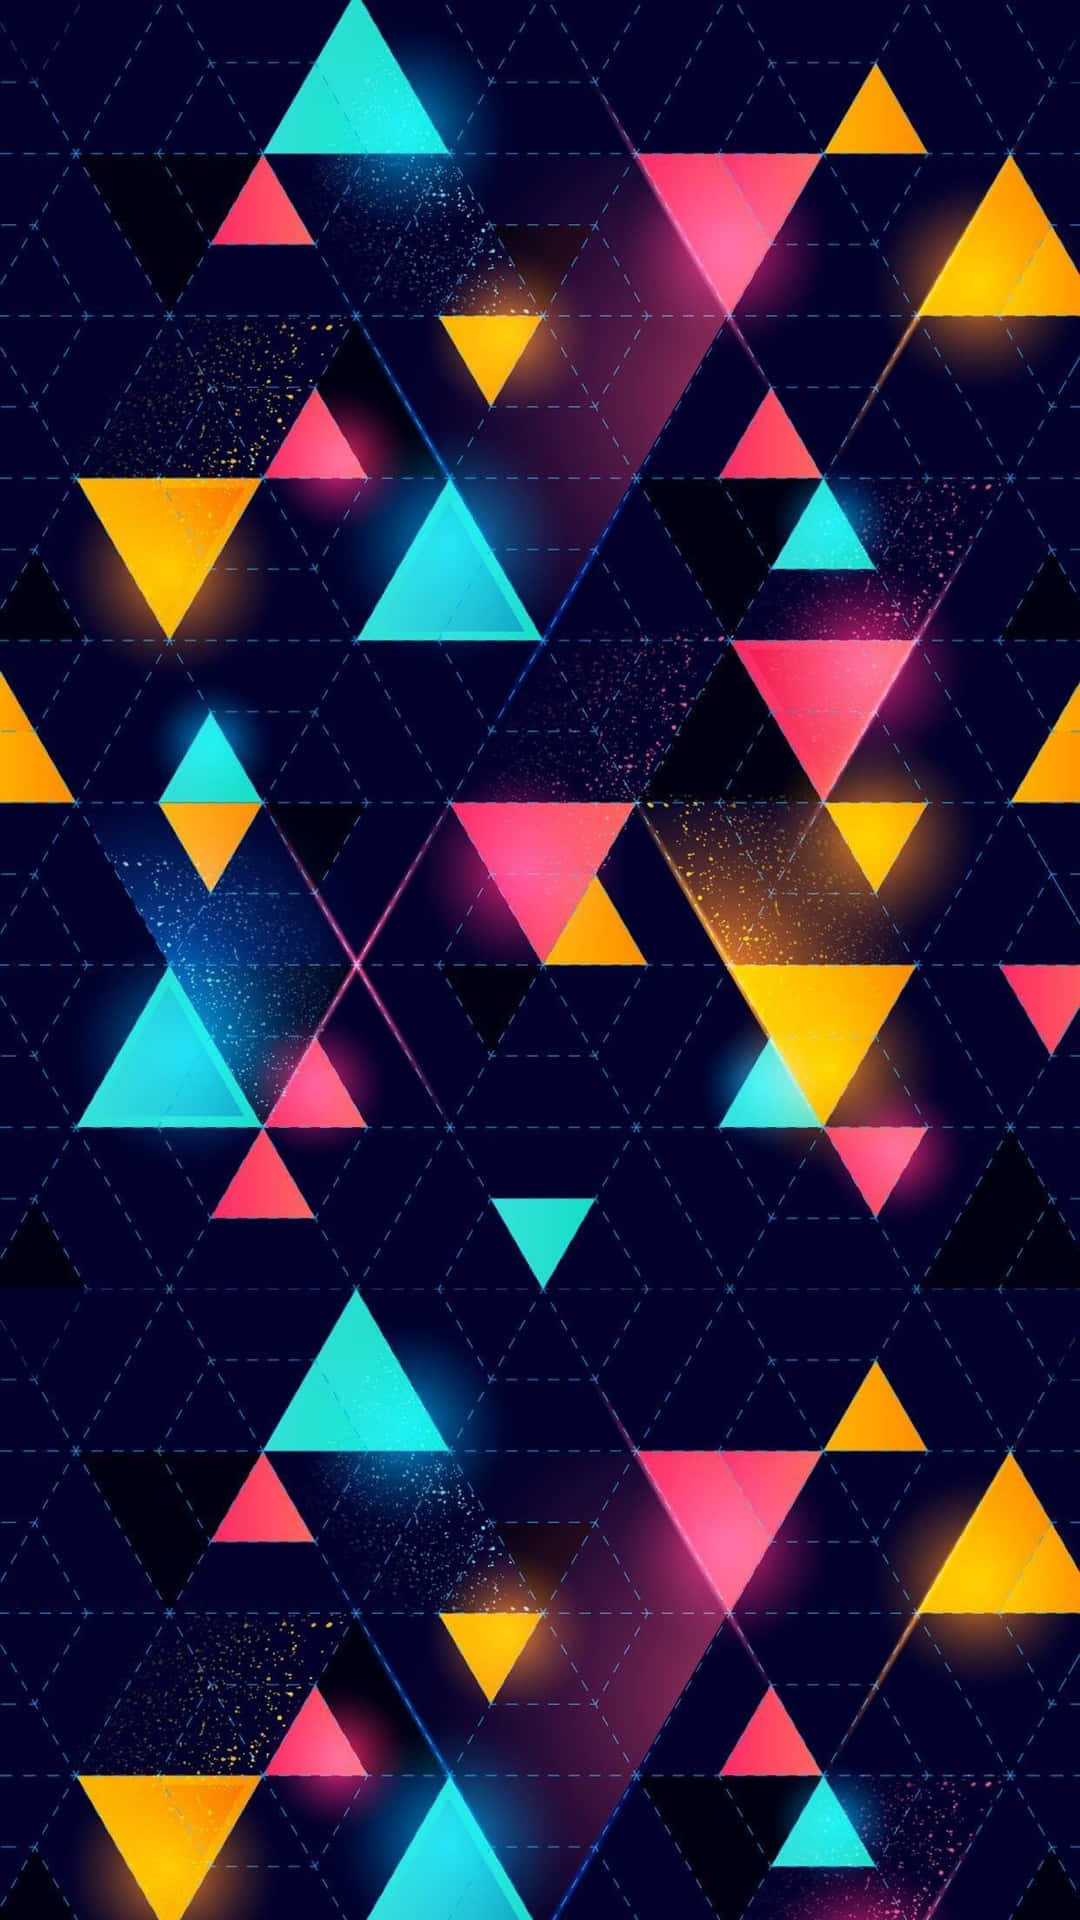 Skärmväggför Iphone Med Färgglatt Triangelmönster Från En Designer. Wallpaper